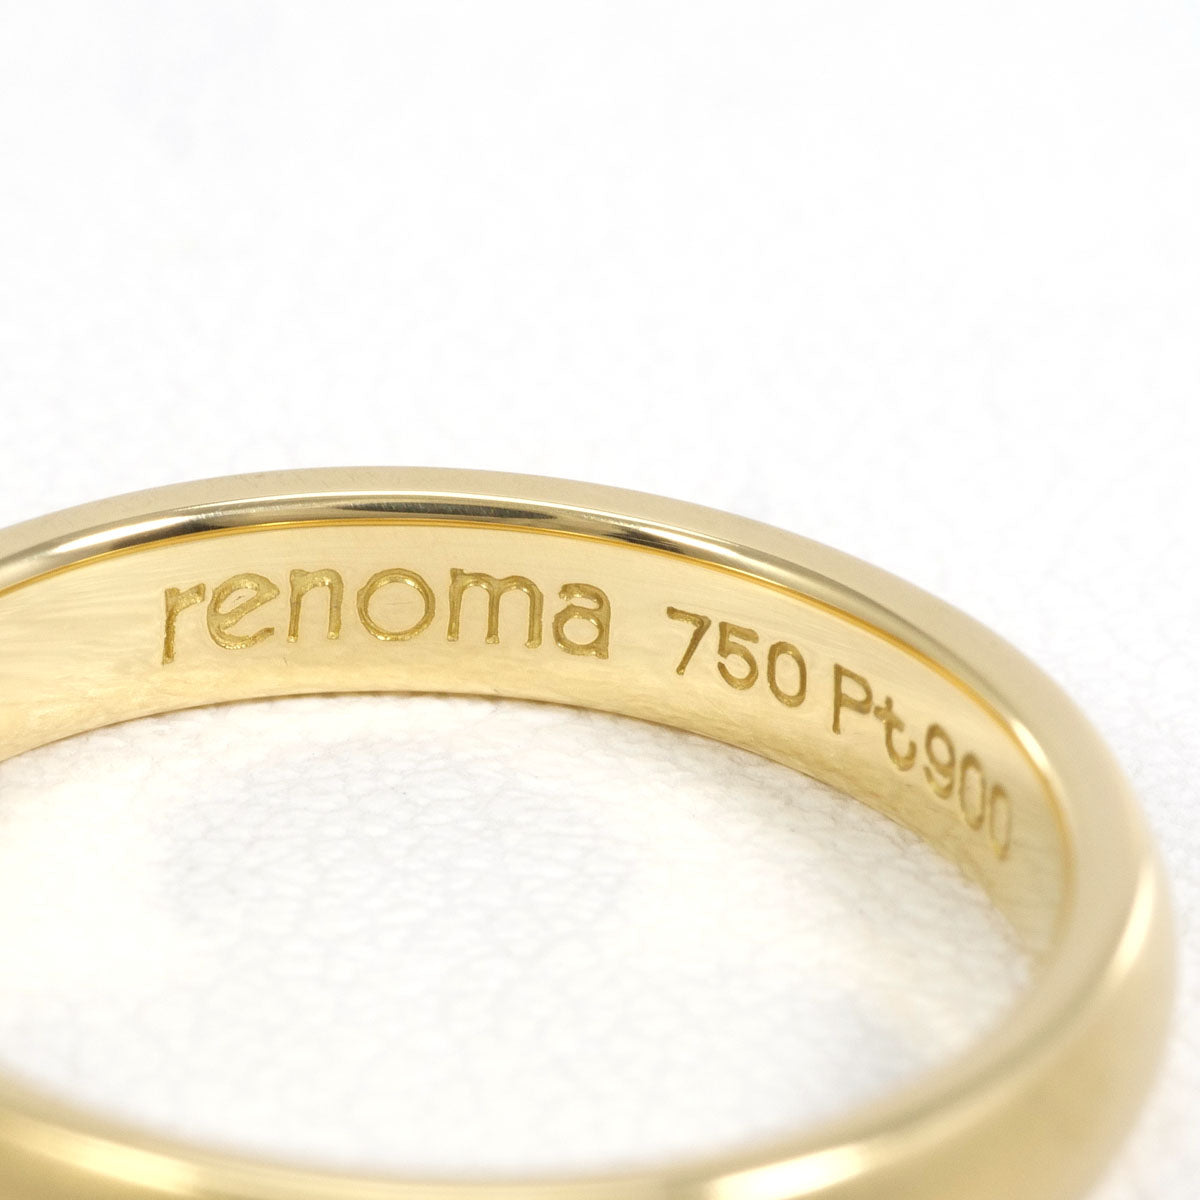 【販売新作】レノマ PT900 K18YG リング 指輪 6号 総重量約3.1g 中古 美品 送料無料☆0315 イエローゴールド